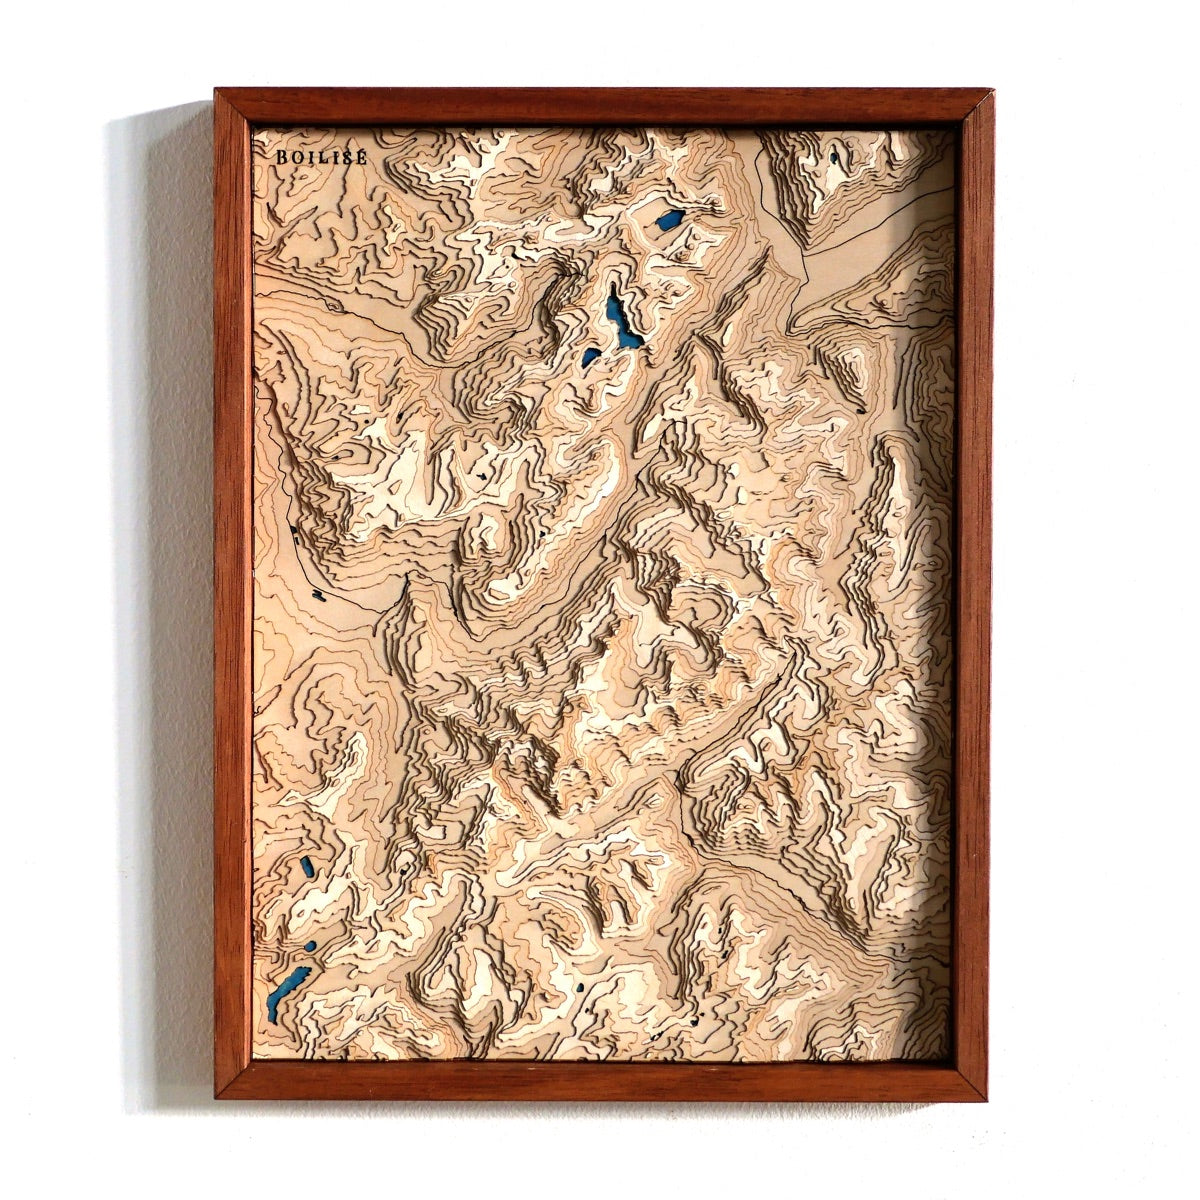 Carte topographique en relief du massif du mont blanc avec lacs bleus marine dans un cadre standard brun